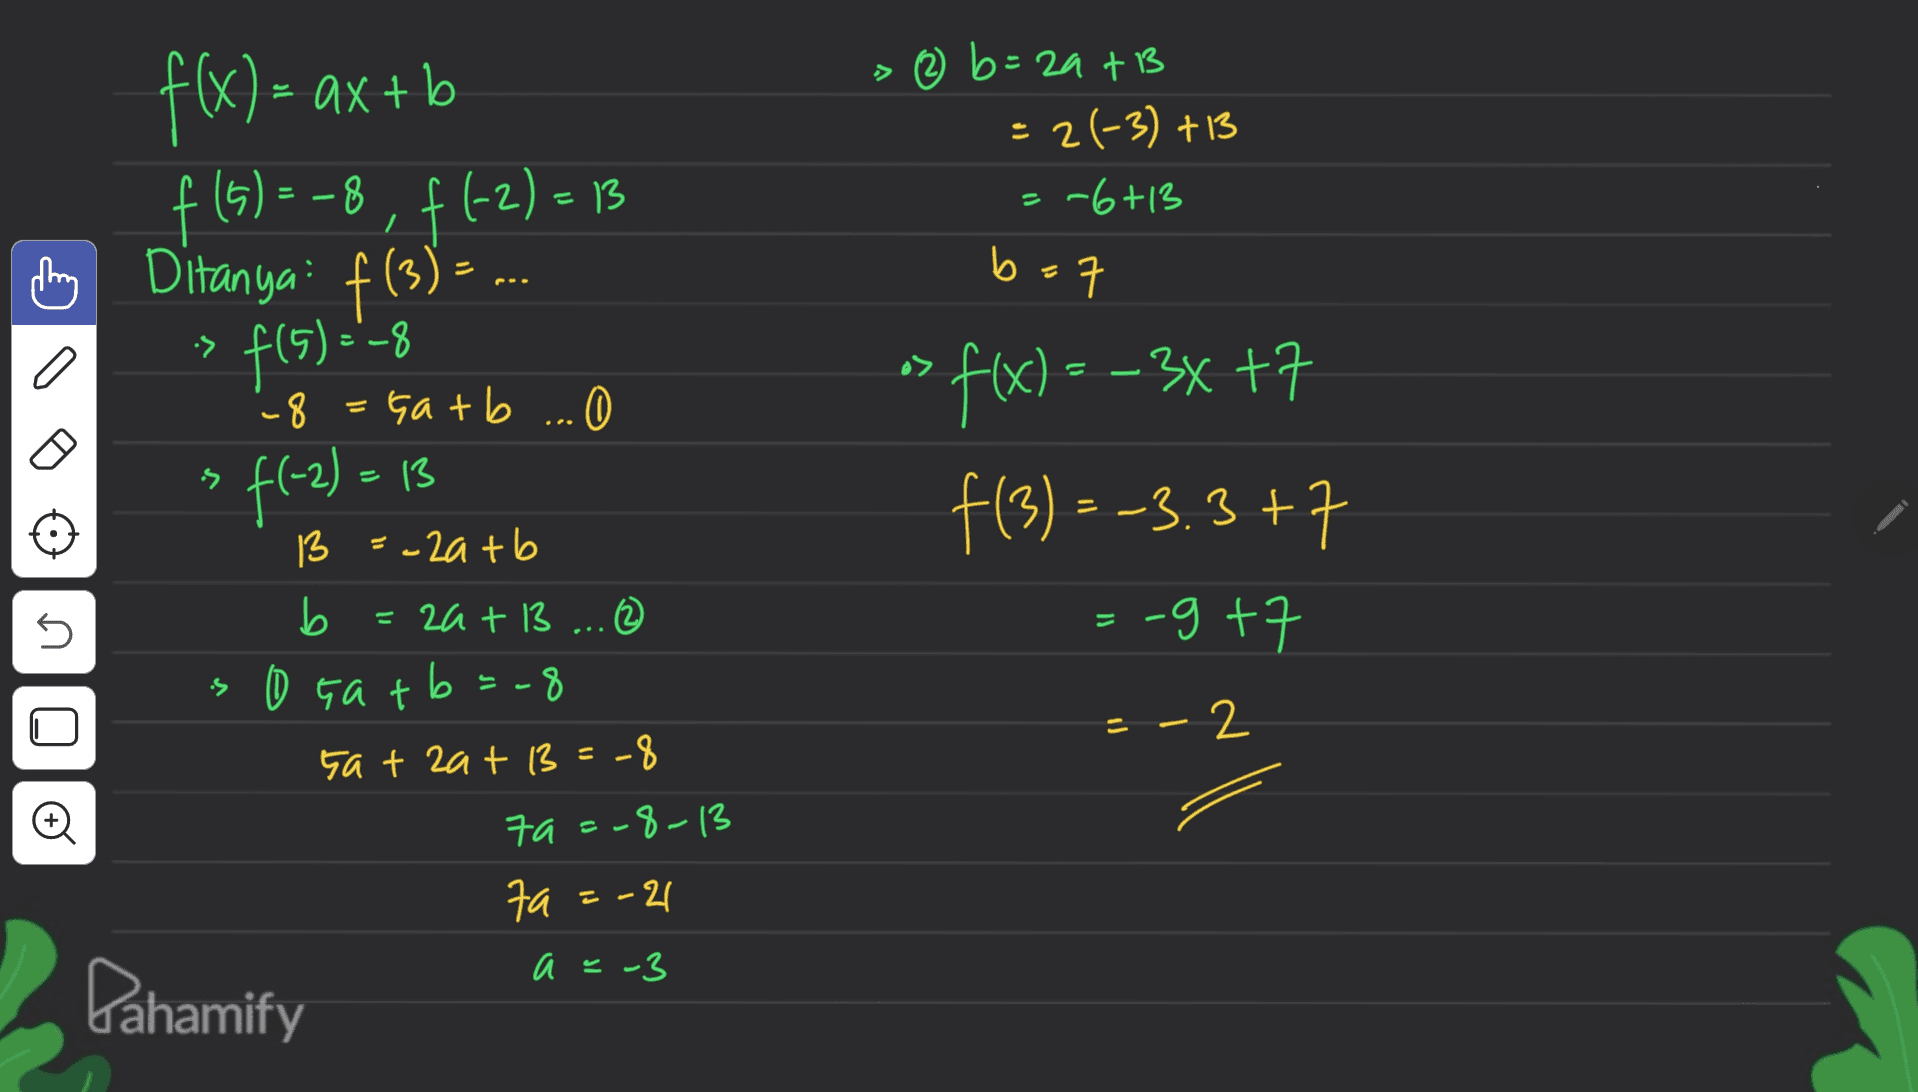 f(x) = ax + b f (5) = -8, f(-2)=13 ( Ditanya: f(3) = ... > 2 b= zats = 2(-3) +13 = -6+13 b b=7 ㅋ :> f(5)=-8 a> - f(x) = -3x +7 s f f(3) = -3.3+7 :-g+7 U 8 = Gatb ... 0 O f(-2) = 13 13 =-2atb b 2a + 13 ... (2 0 Gatb=-8 sat zat 13=-8 79=-8-13 7a fa=-21 = - 2 O a =- Dahamify 